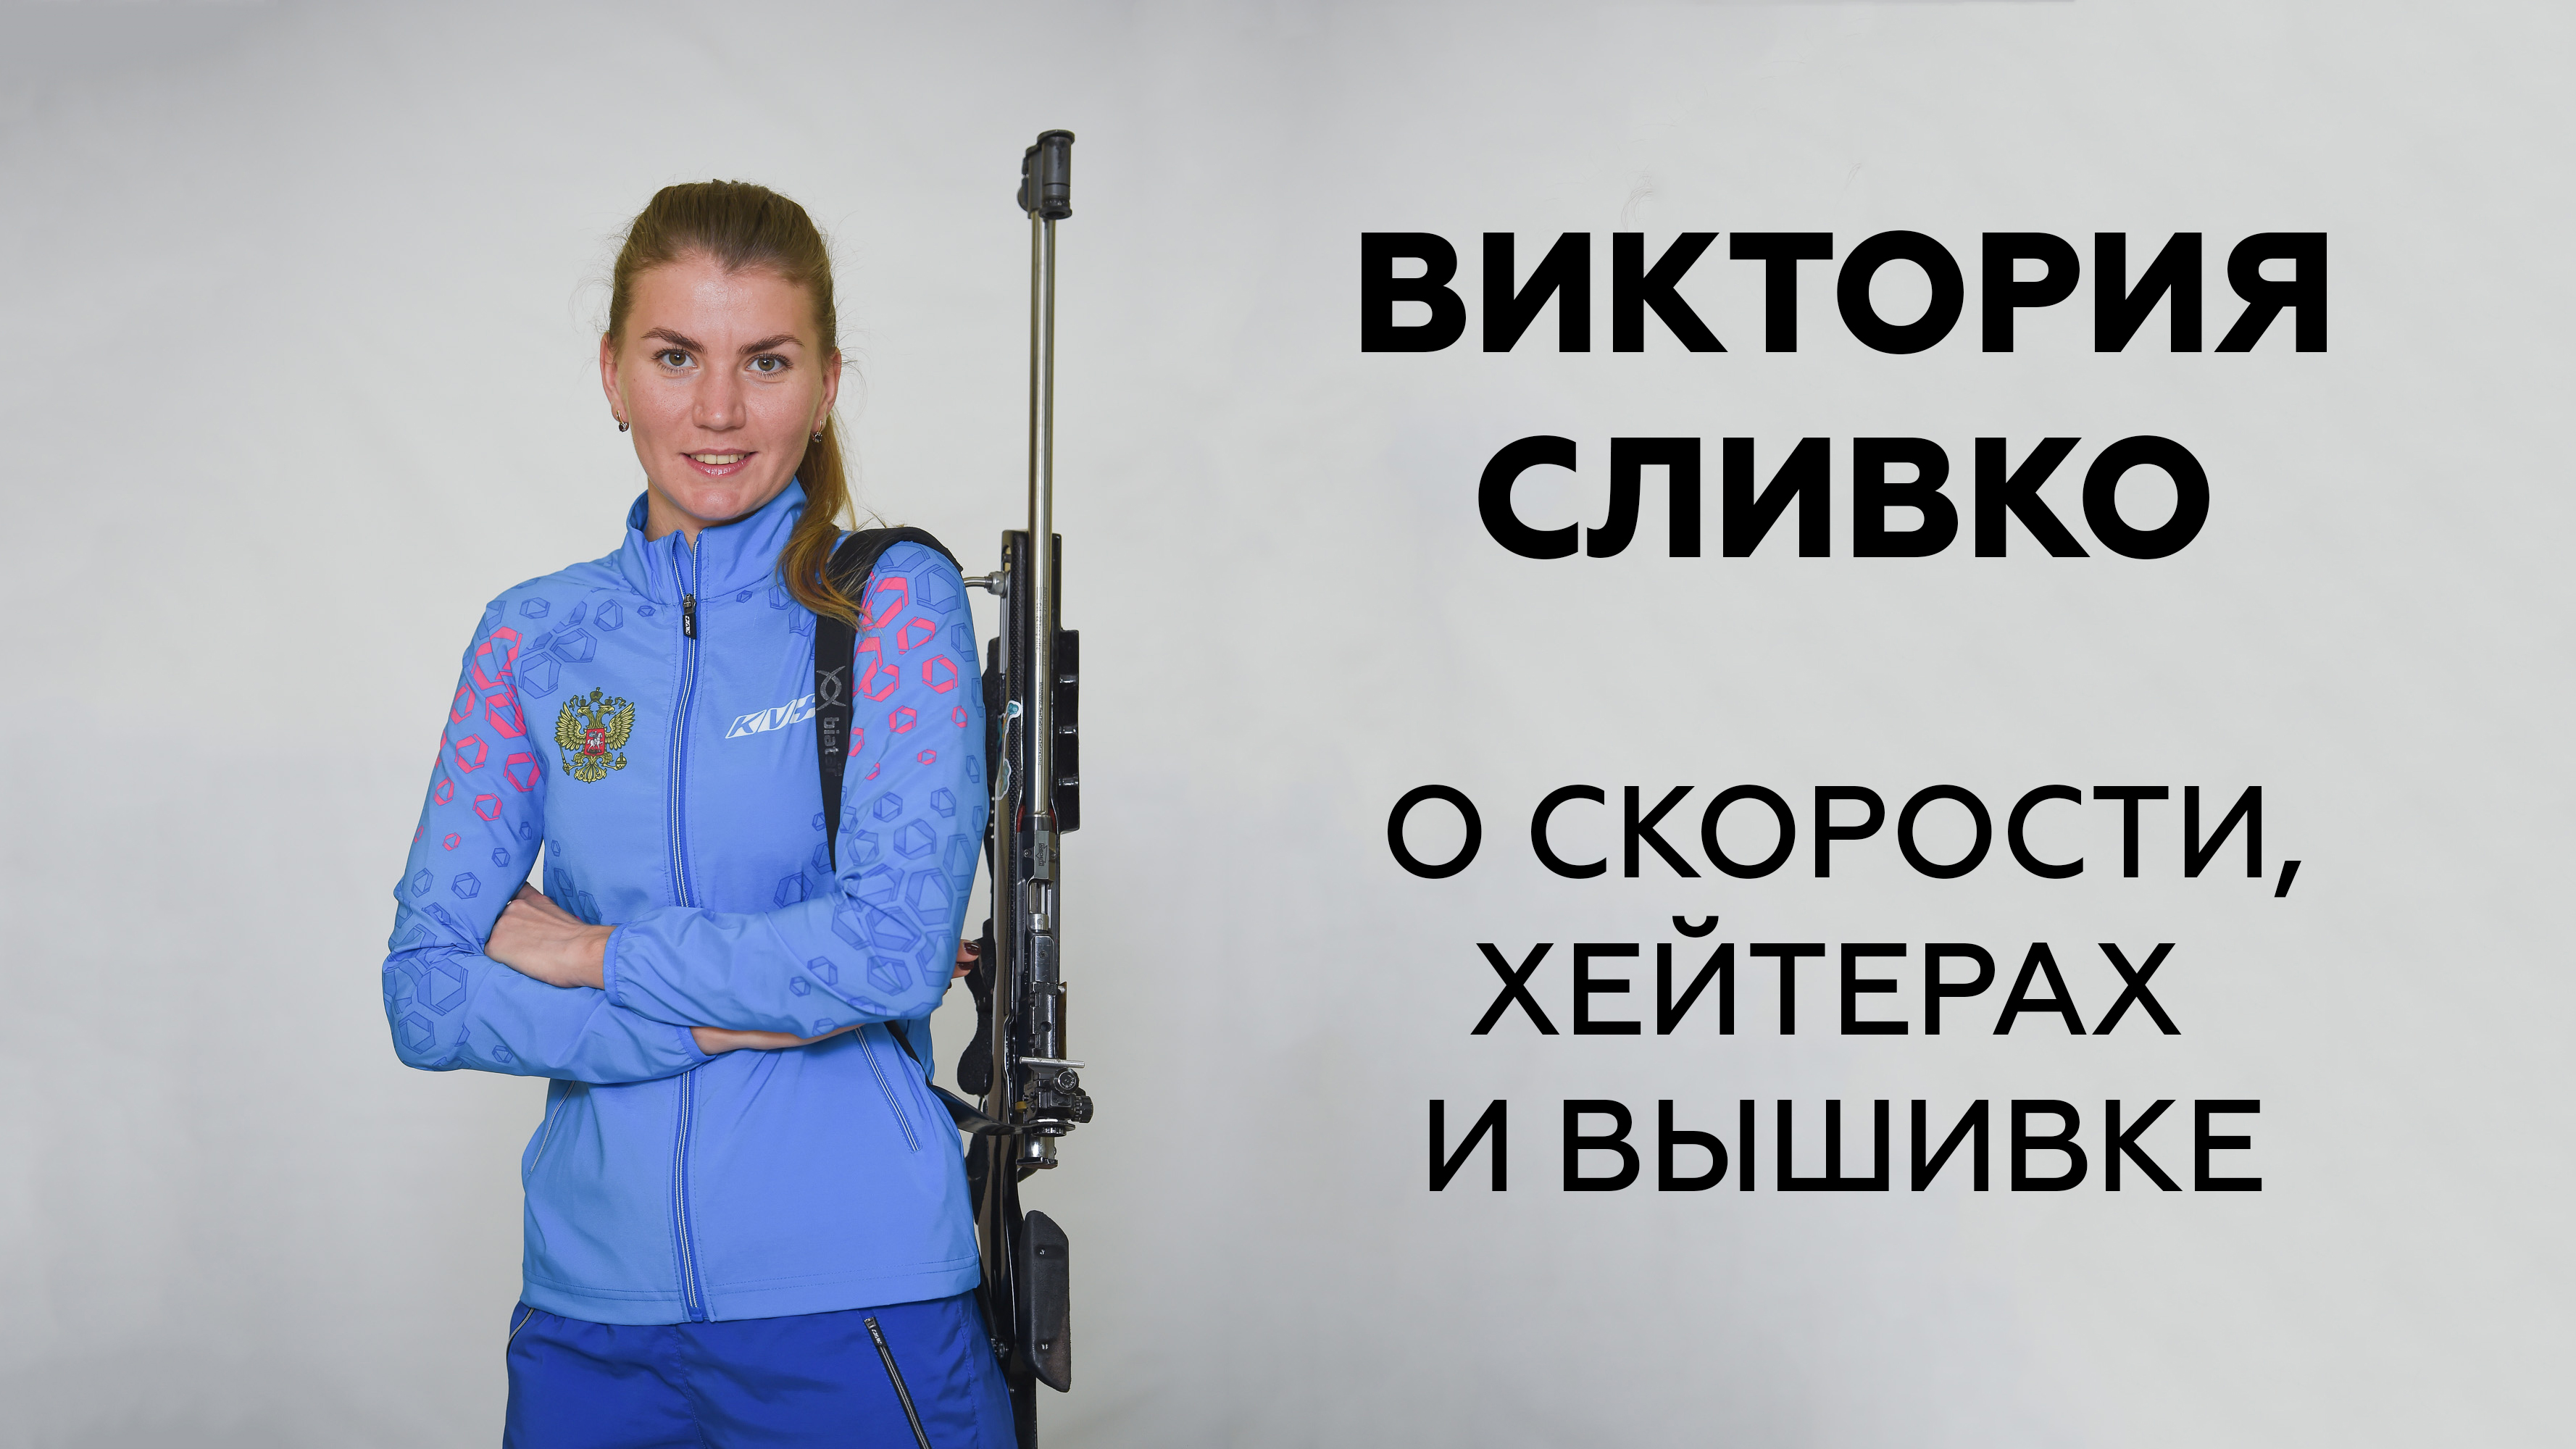 Союз биатлонистов России открыл блог на Sports.ru: начали с душевного интервью Вики Сливко – о скорости, хейтерах и вышивке